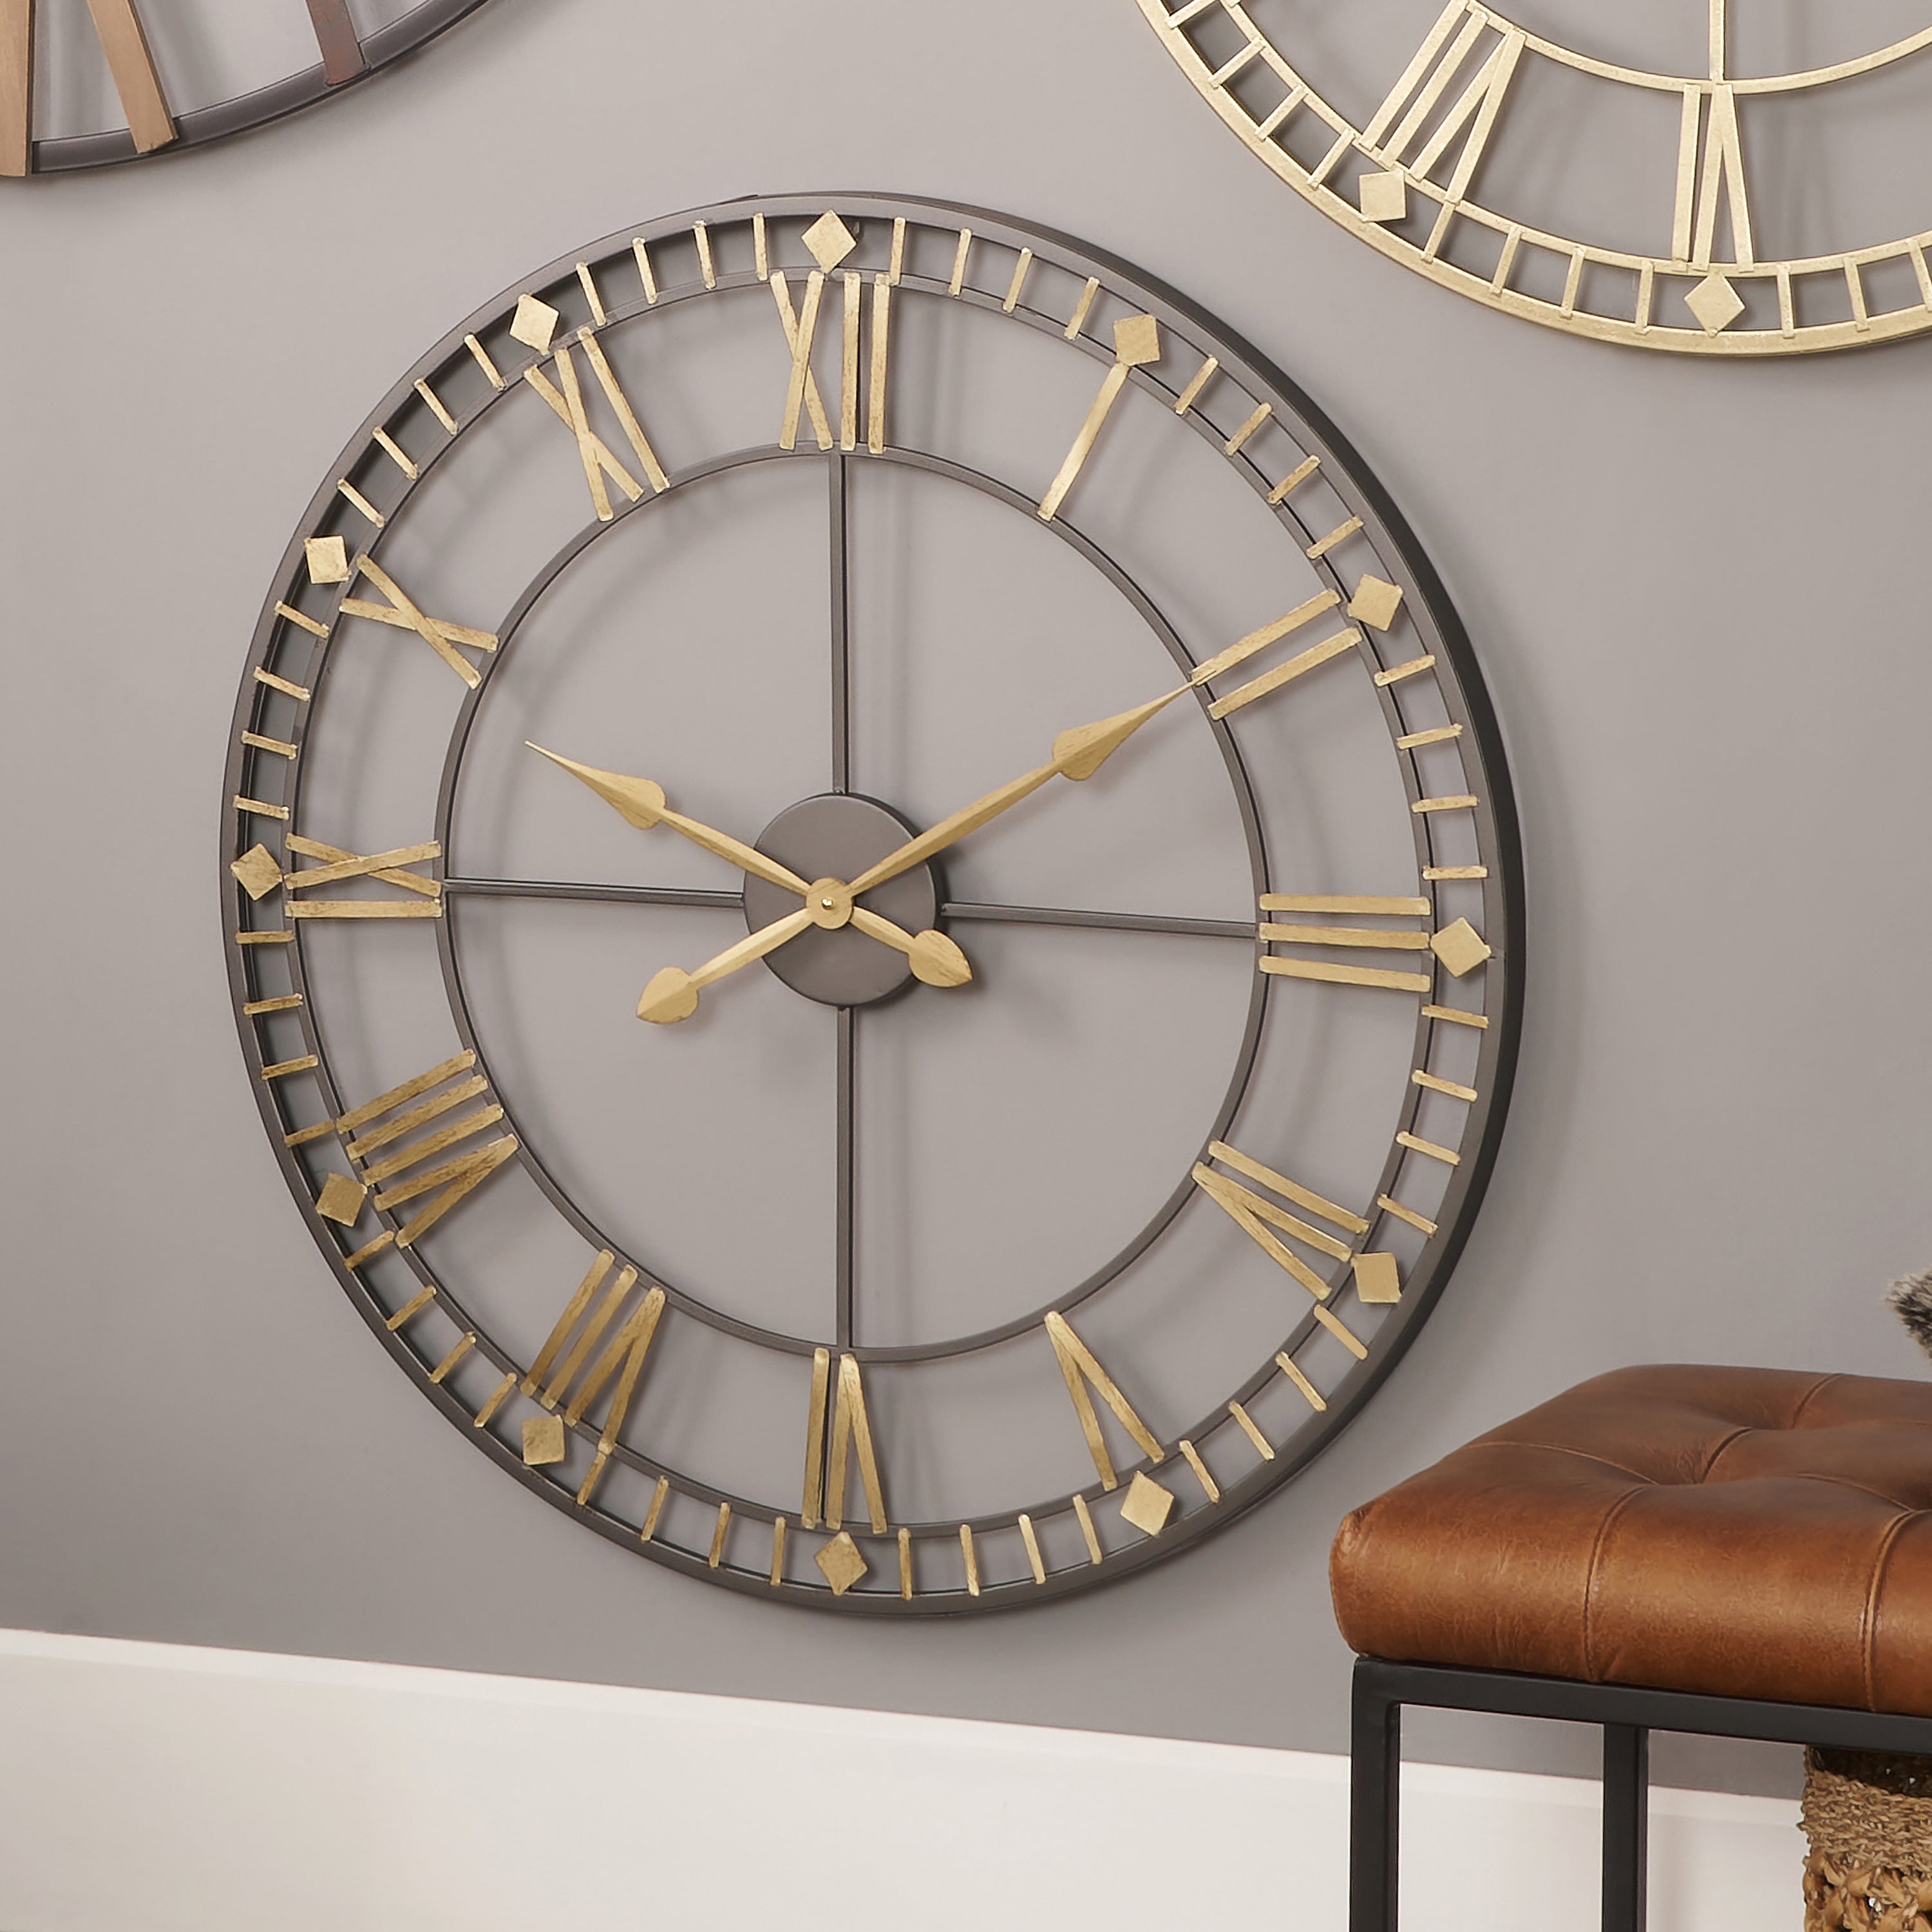 Antique Metal Skeleton Wall Clock